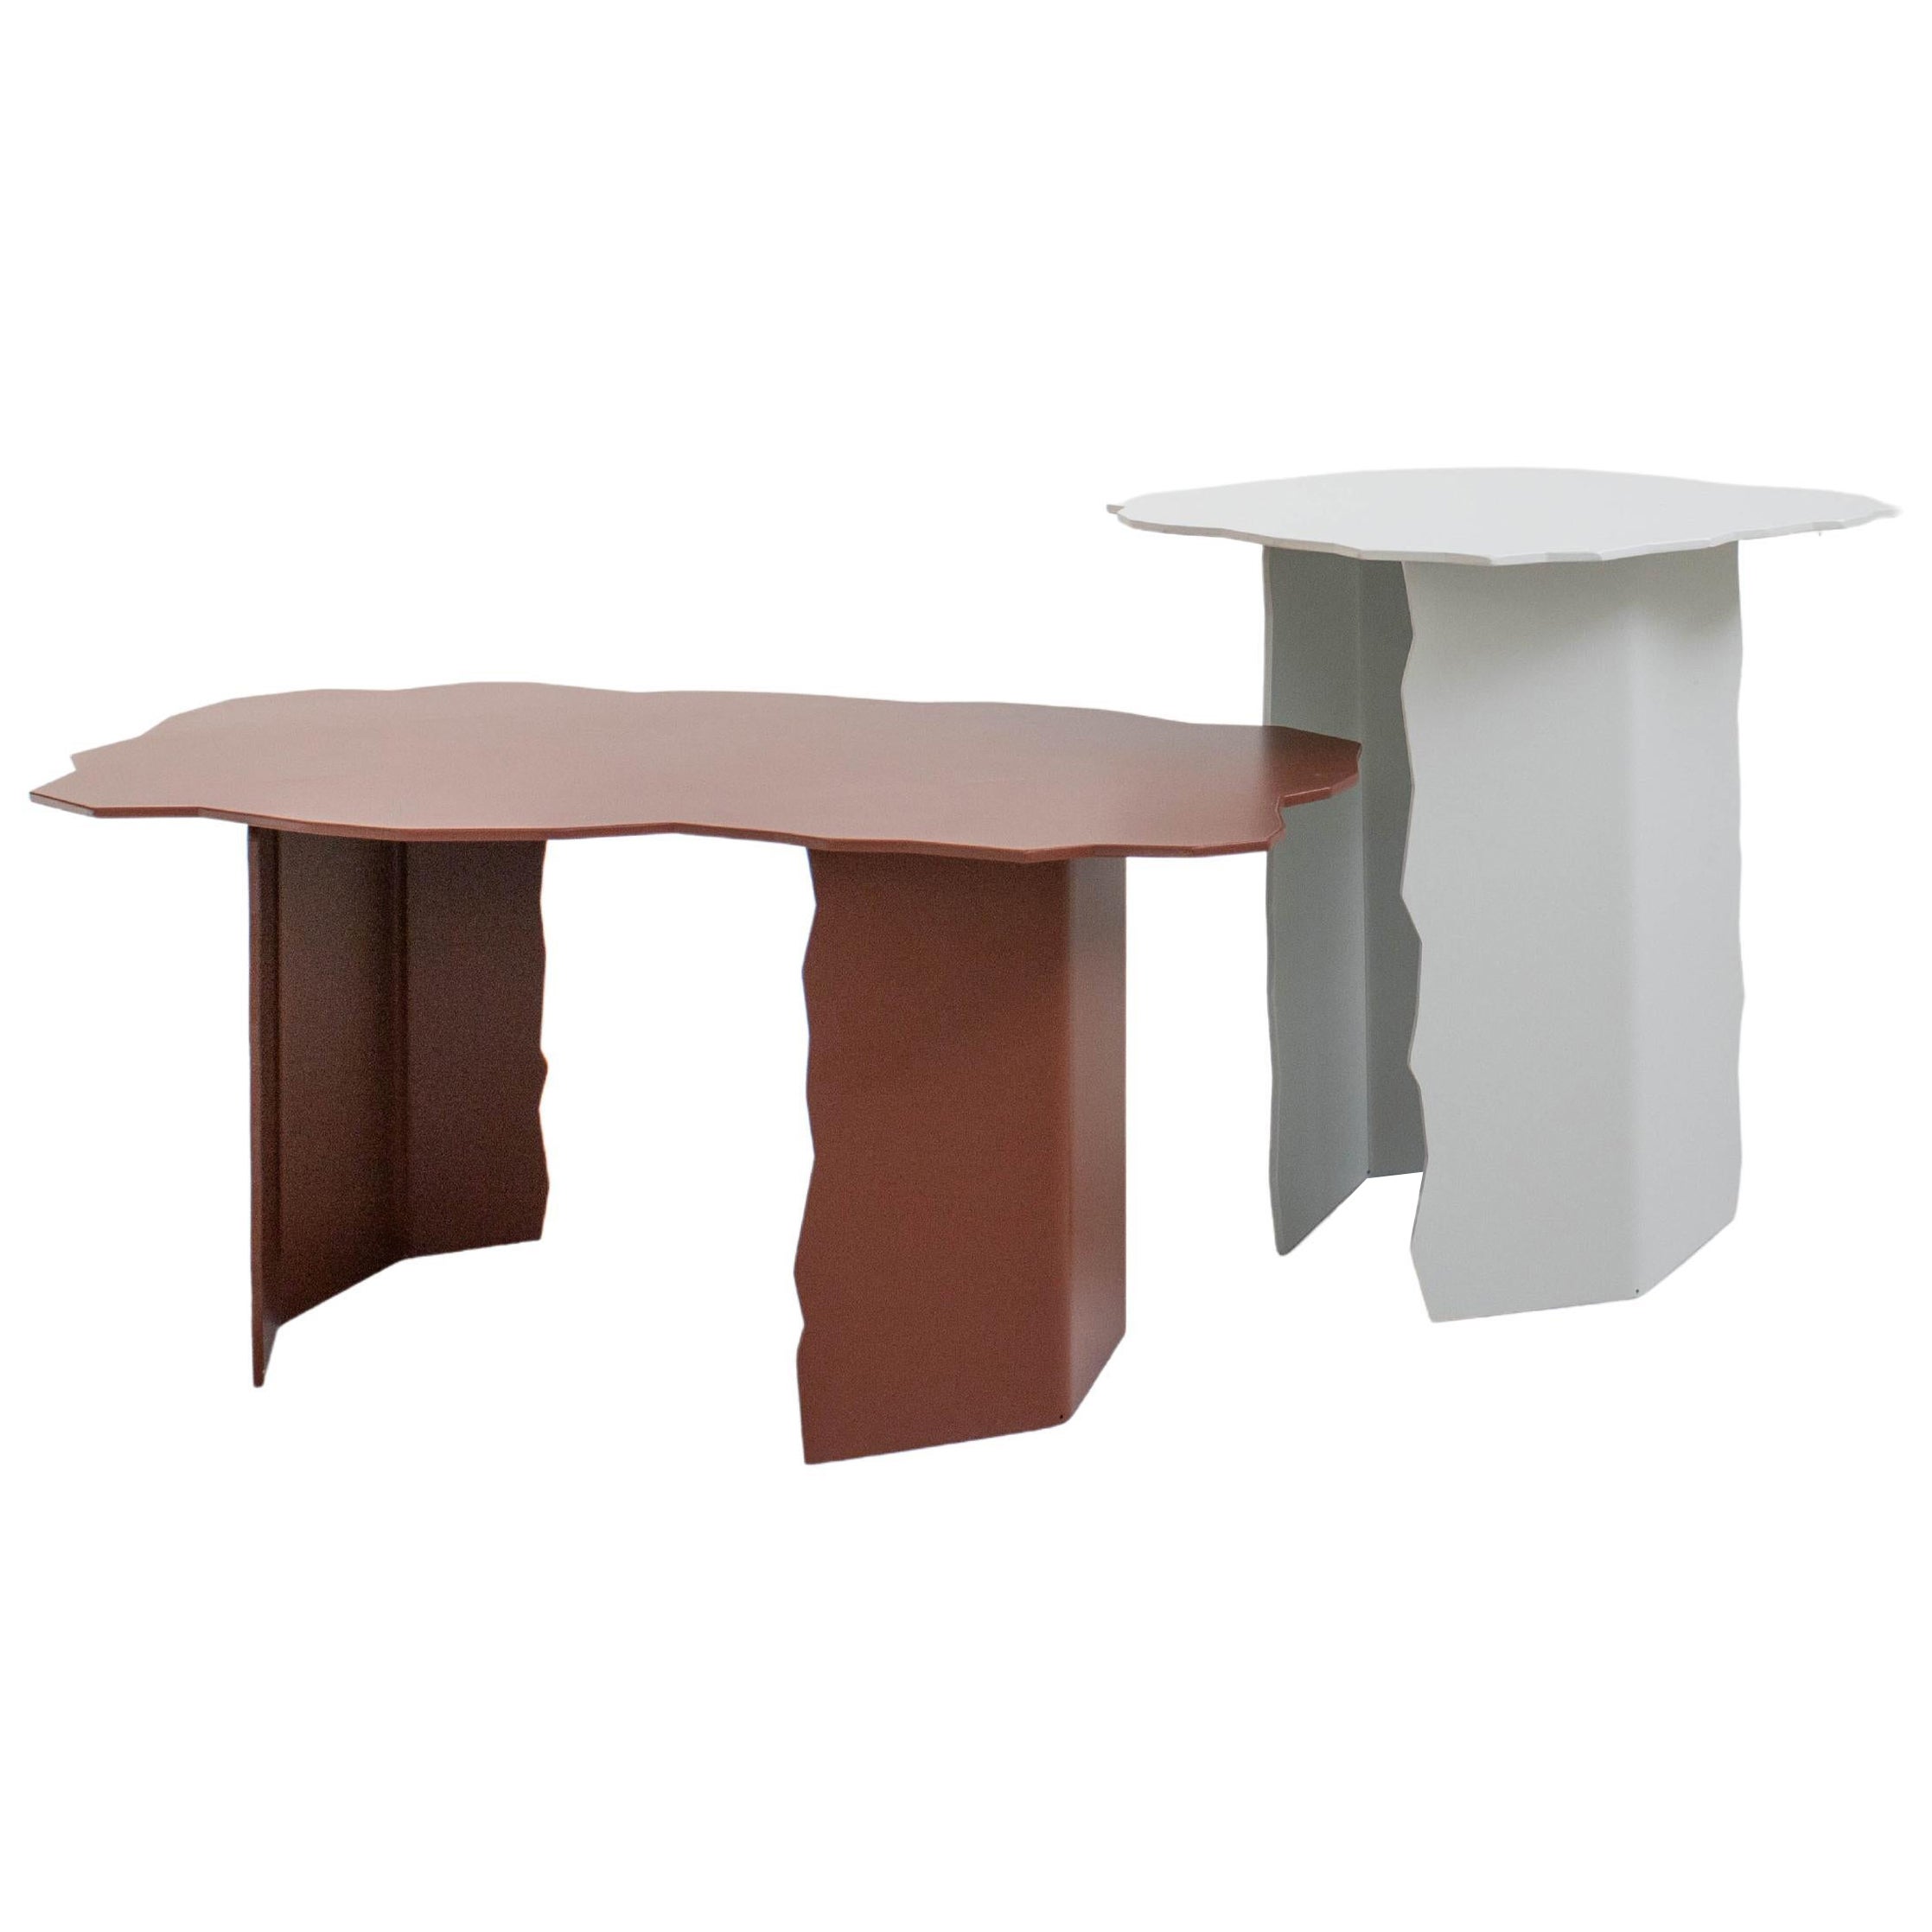 Set of 2 Disrupt Tables by Arne Desmet